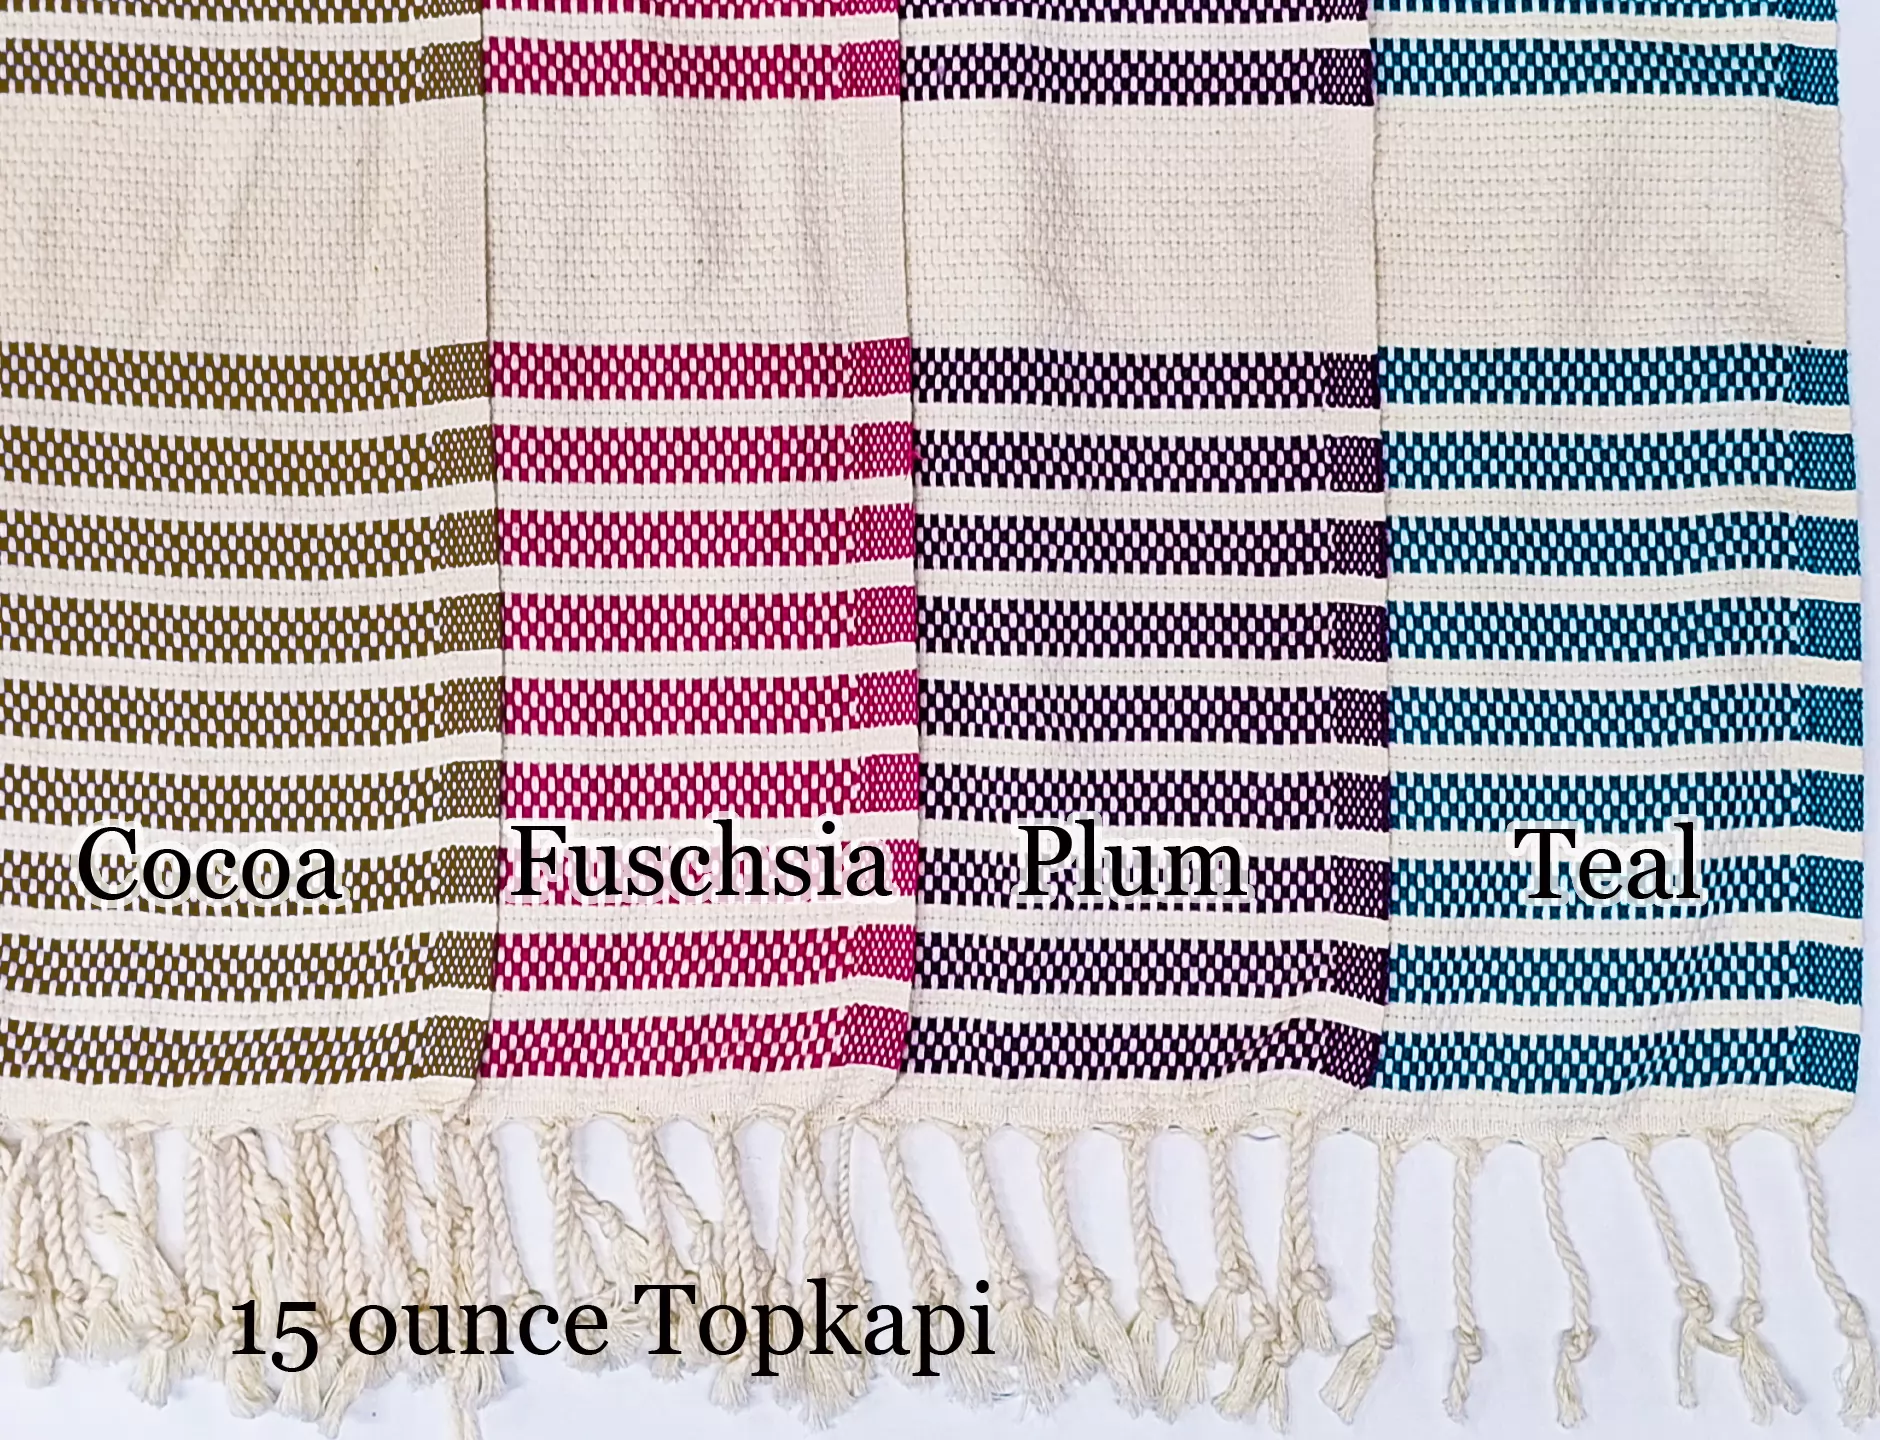 Zebrine Turkish Bath Towel, Travel Peshtemal / Sarong Cotton Towels, Turkish  Towel, Turkish Towels, Turkish Bath Towels 